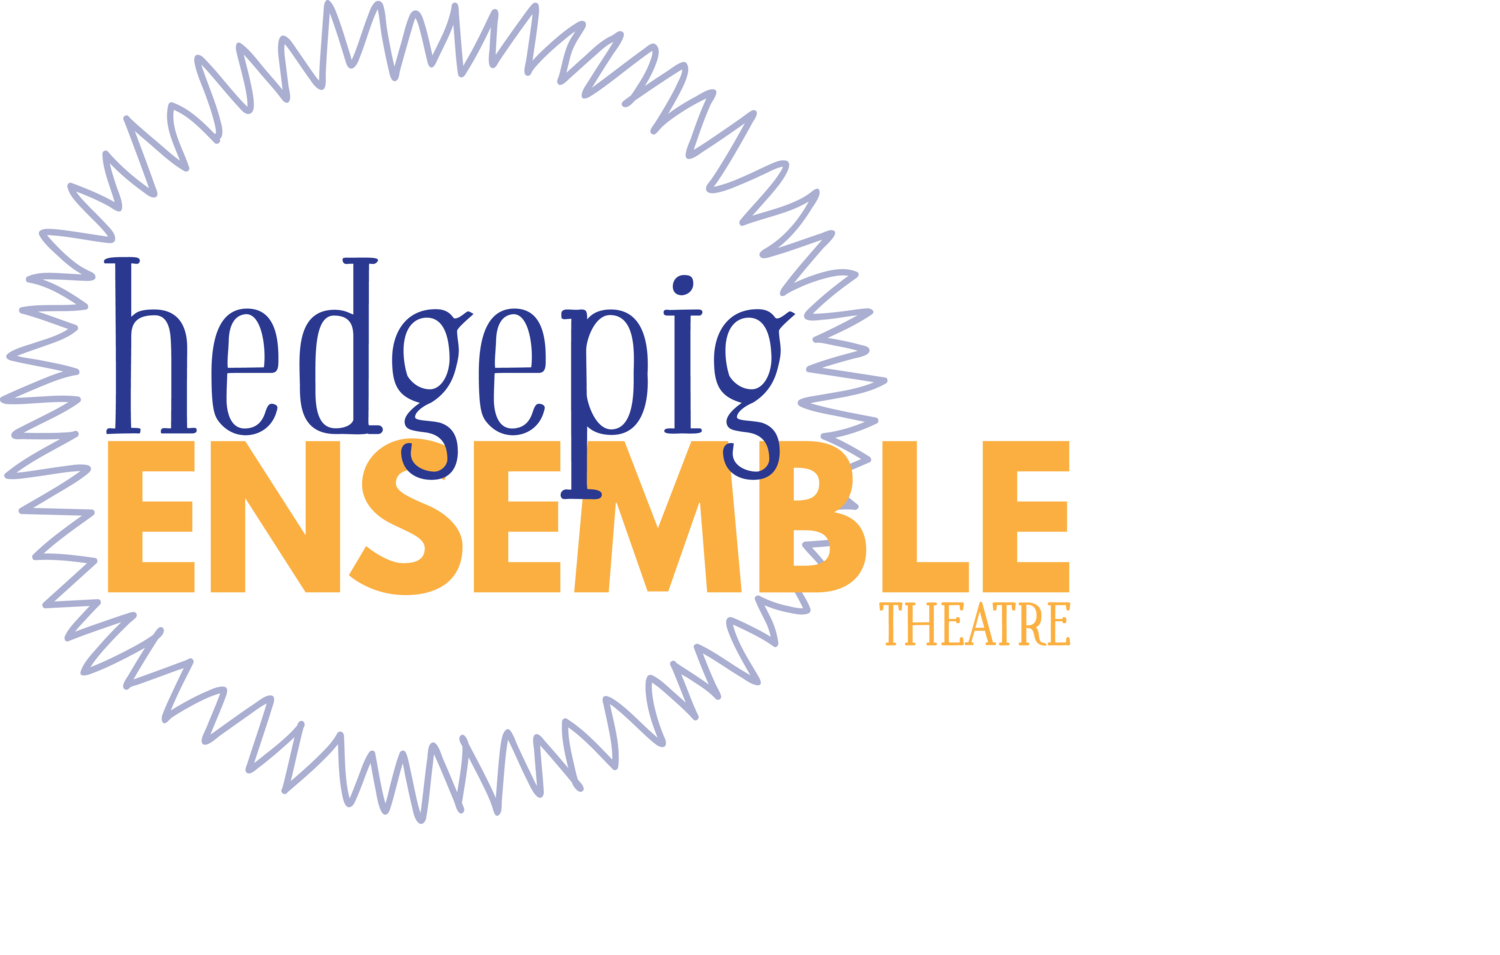 Hedgepig Ensemble Theatre